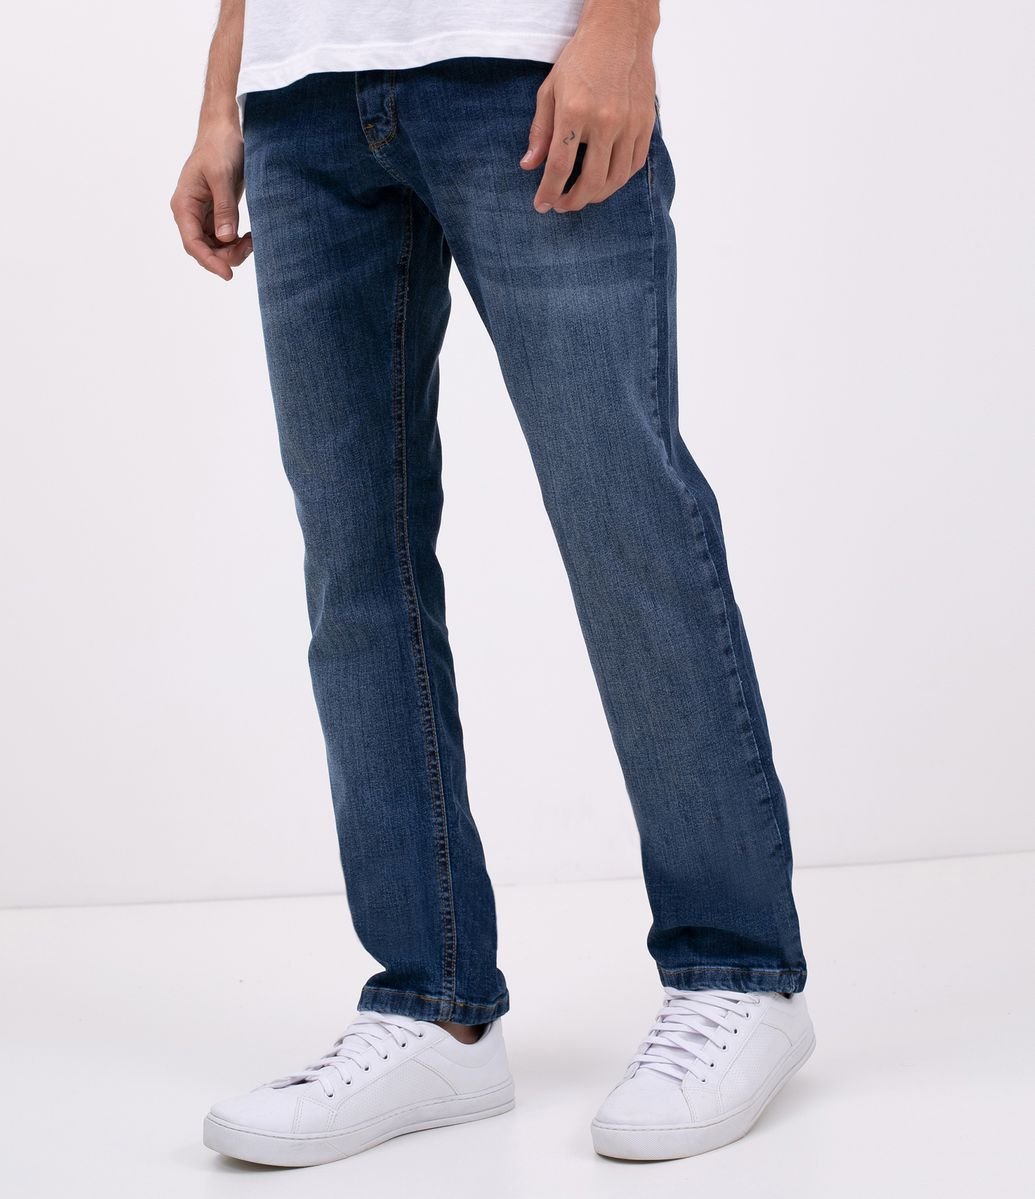 sapatilhas da pepe jeans